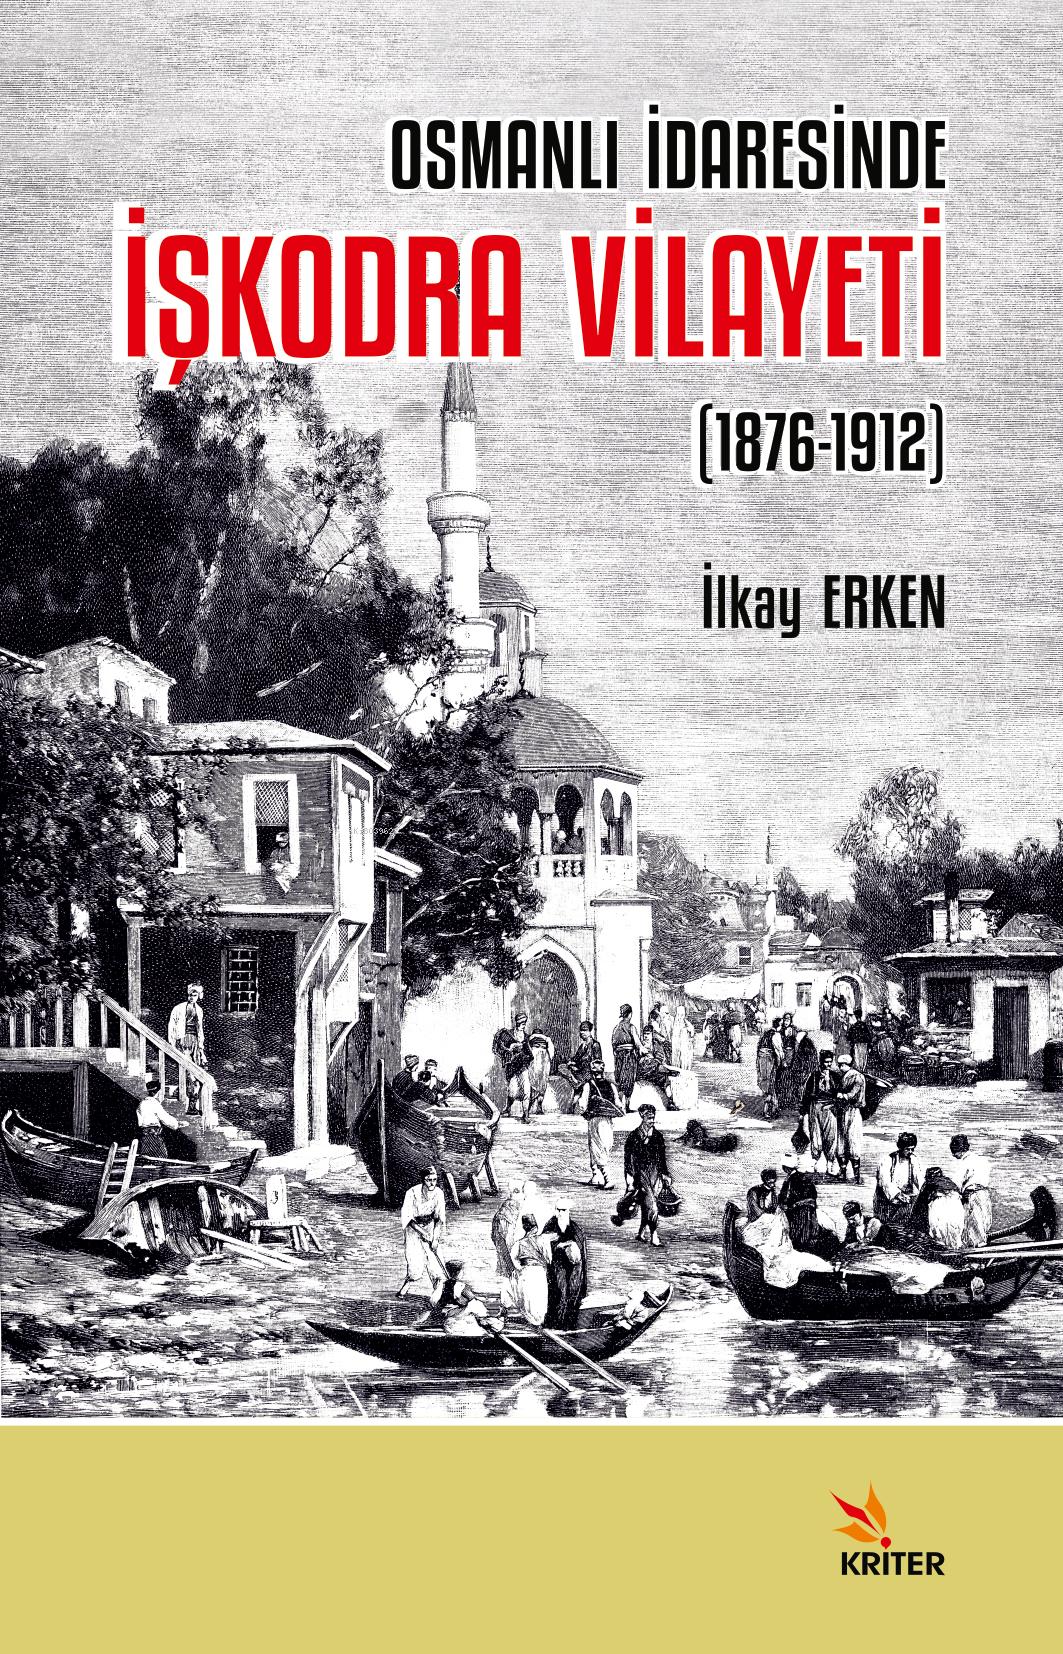 Osmanlı İdaresinde İşkodra Vilayeti (1876-1912)